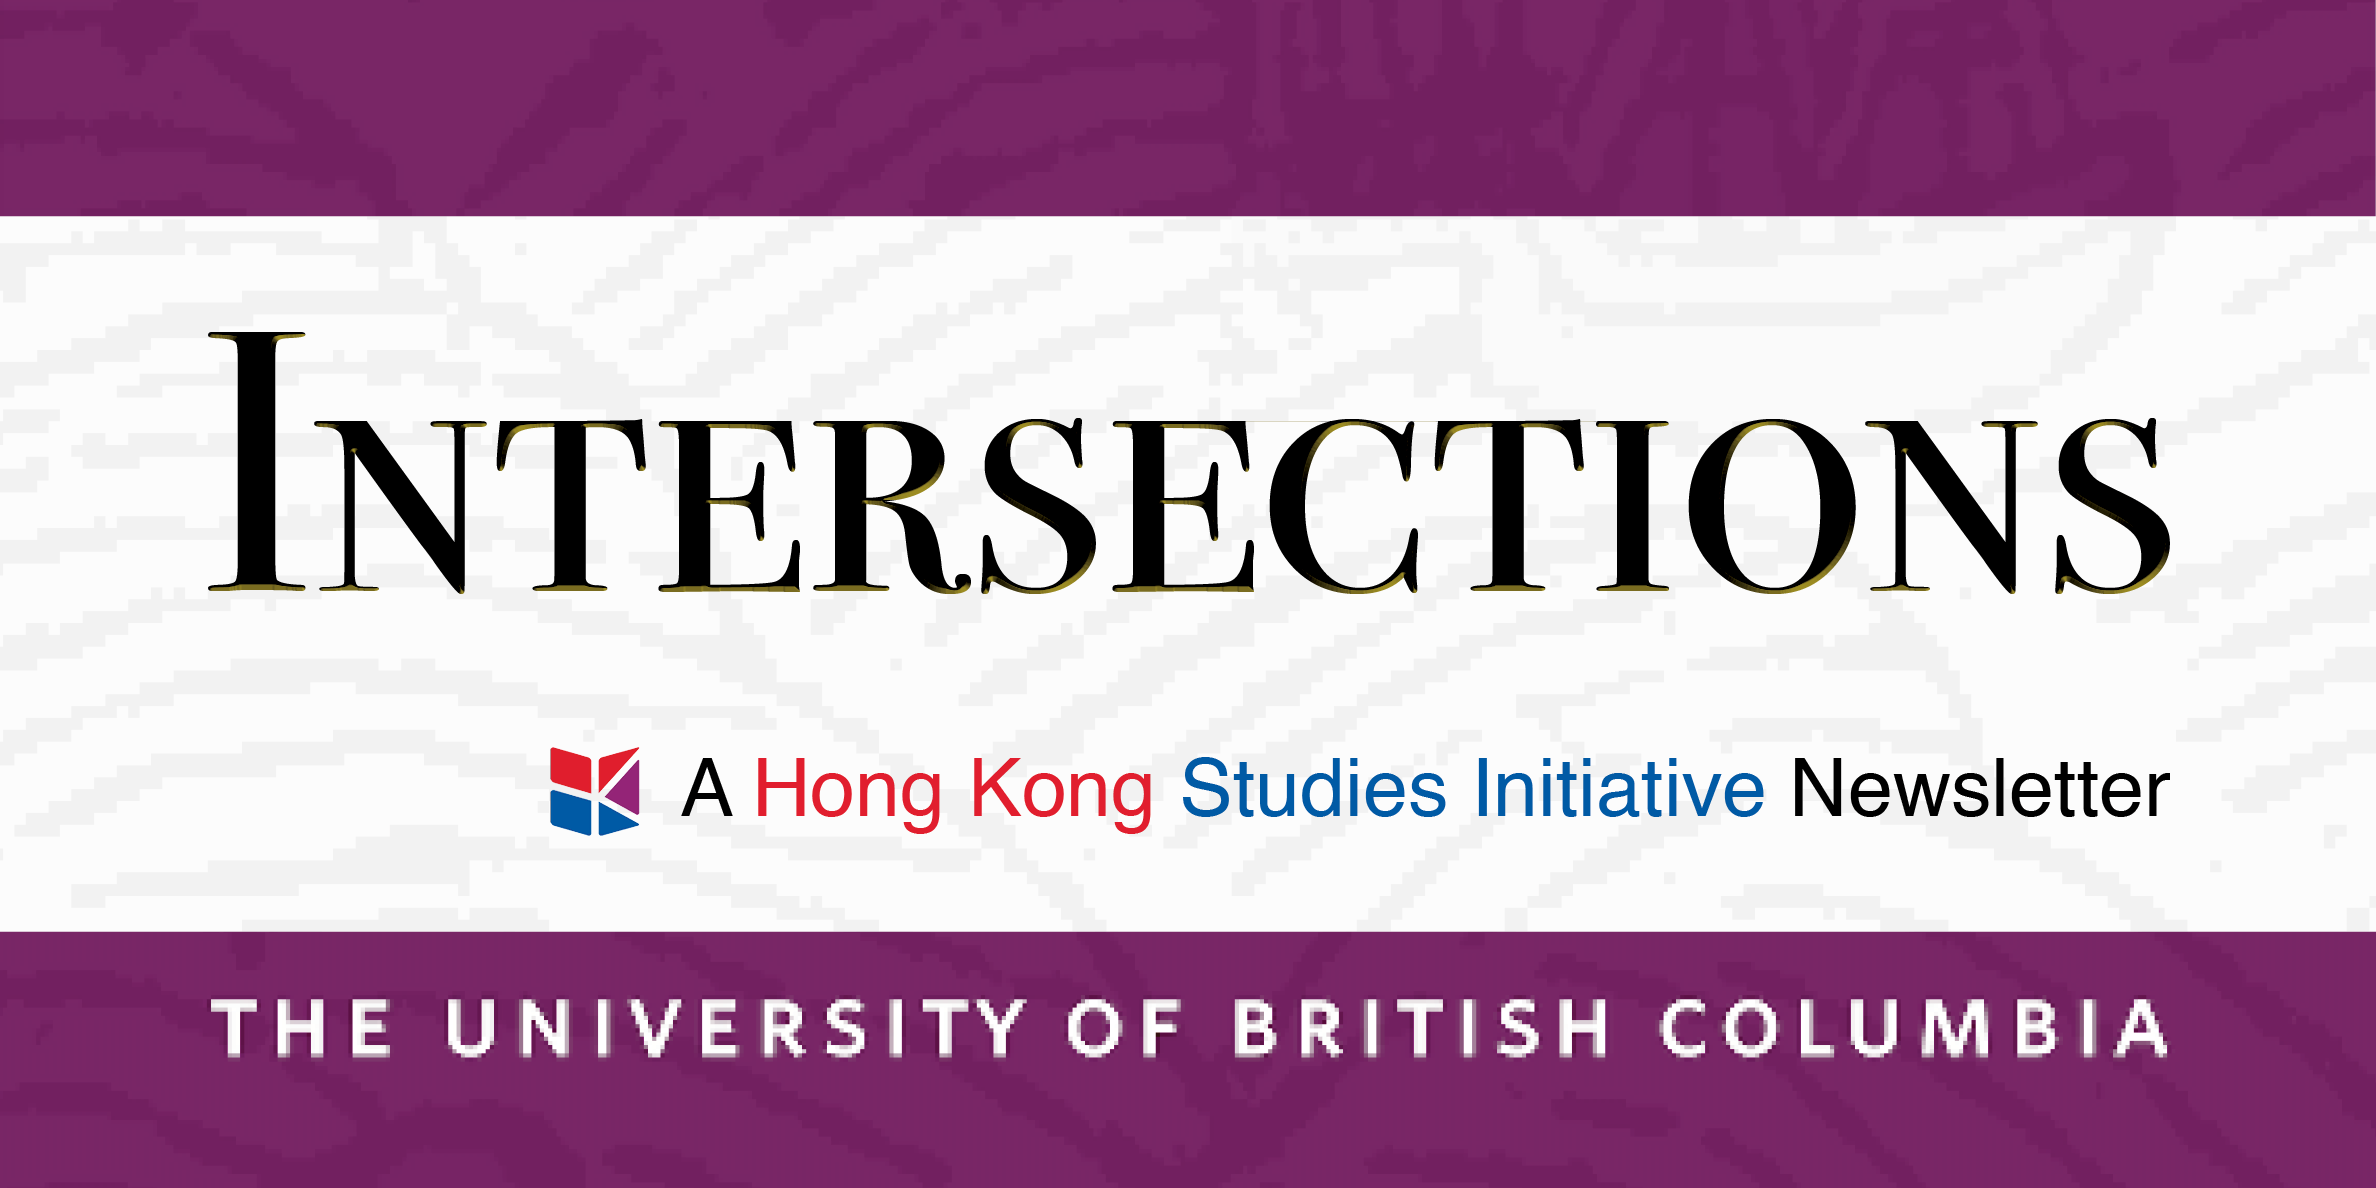 Hong Kong Studies Initiative (HKSI)